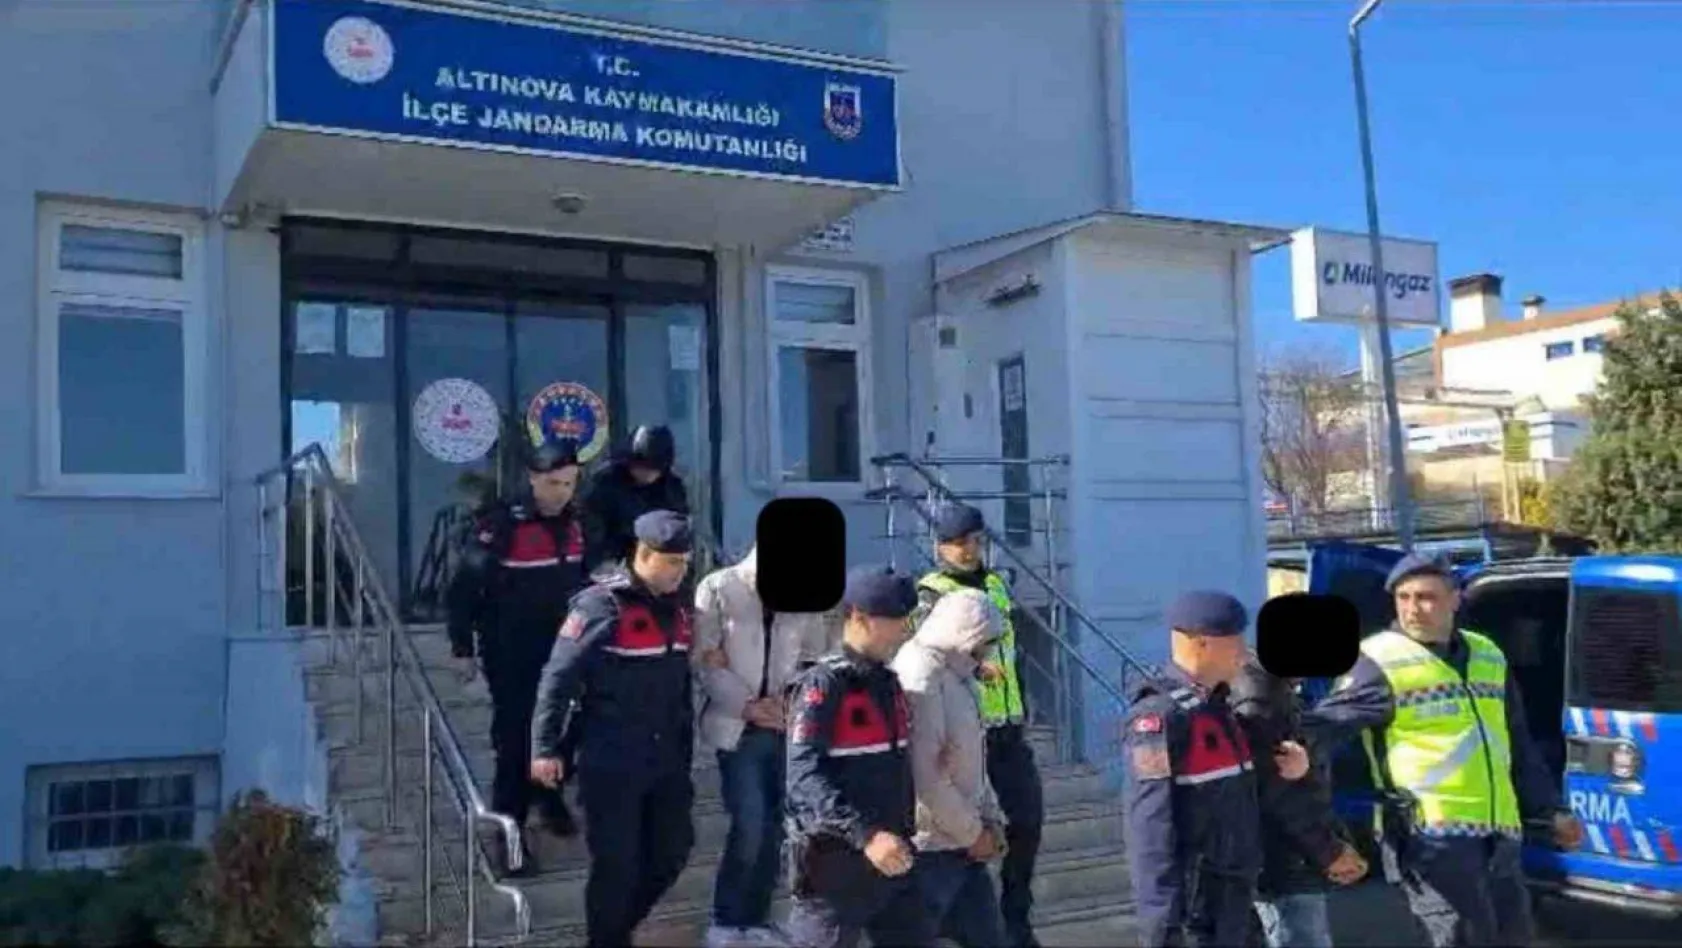 Yalova'da telefon dolandırıcılığı soruşturmasında tutuklu sayısı 7'ye yükseldi